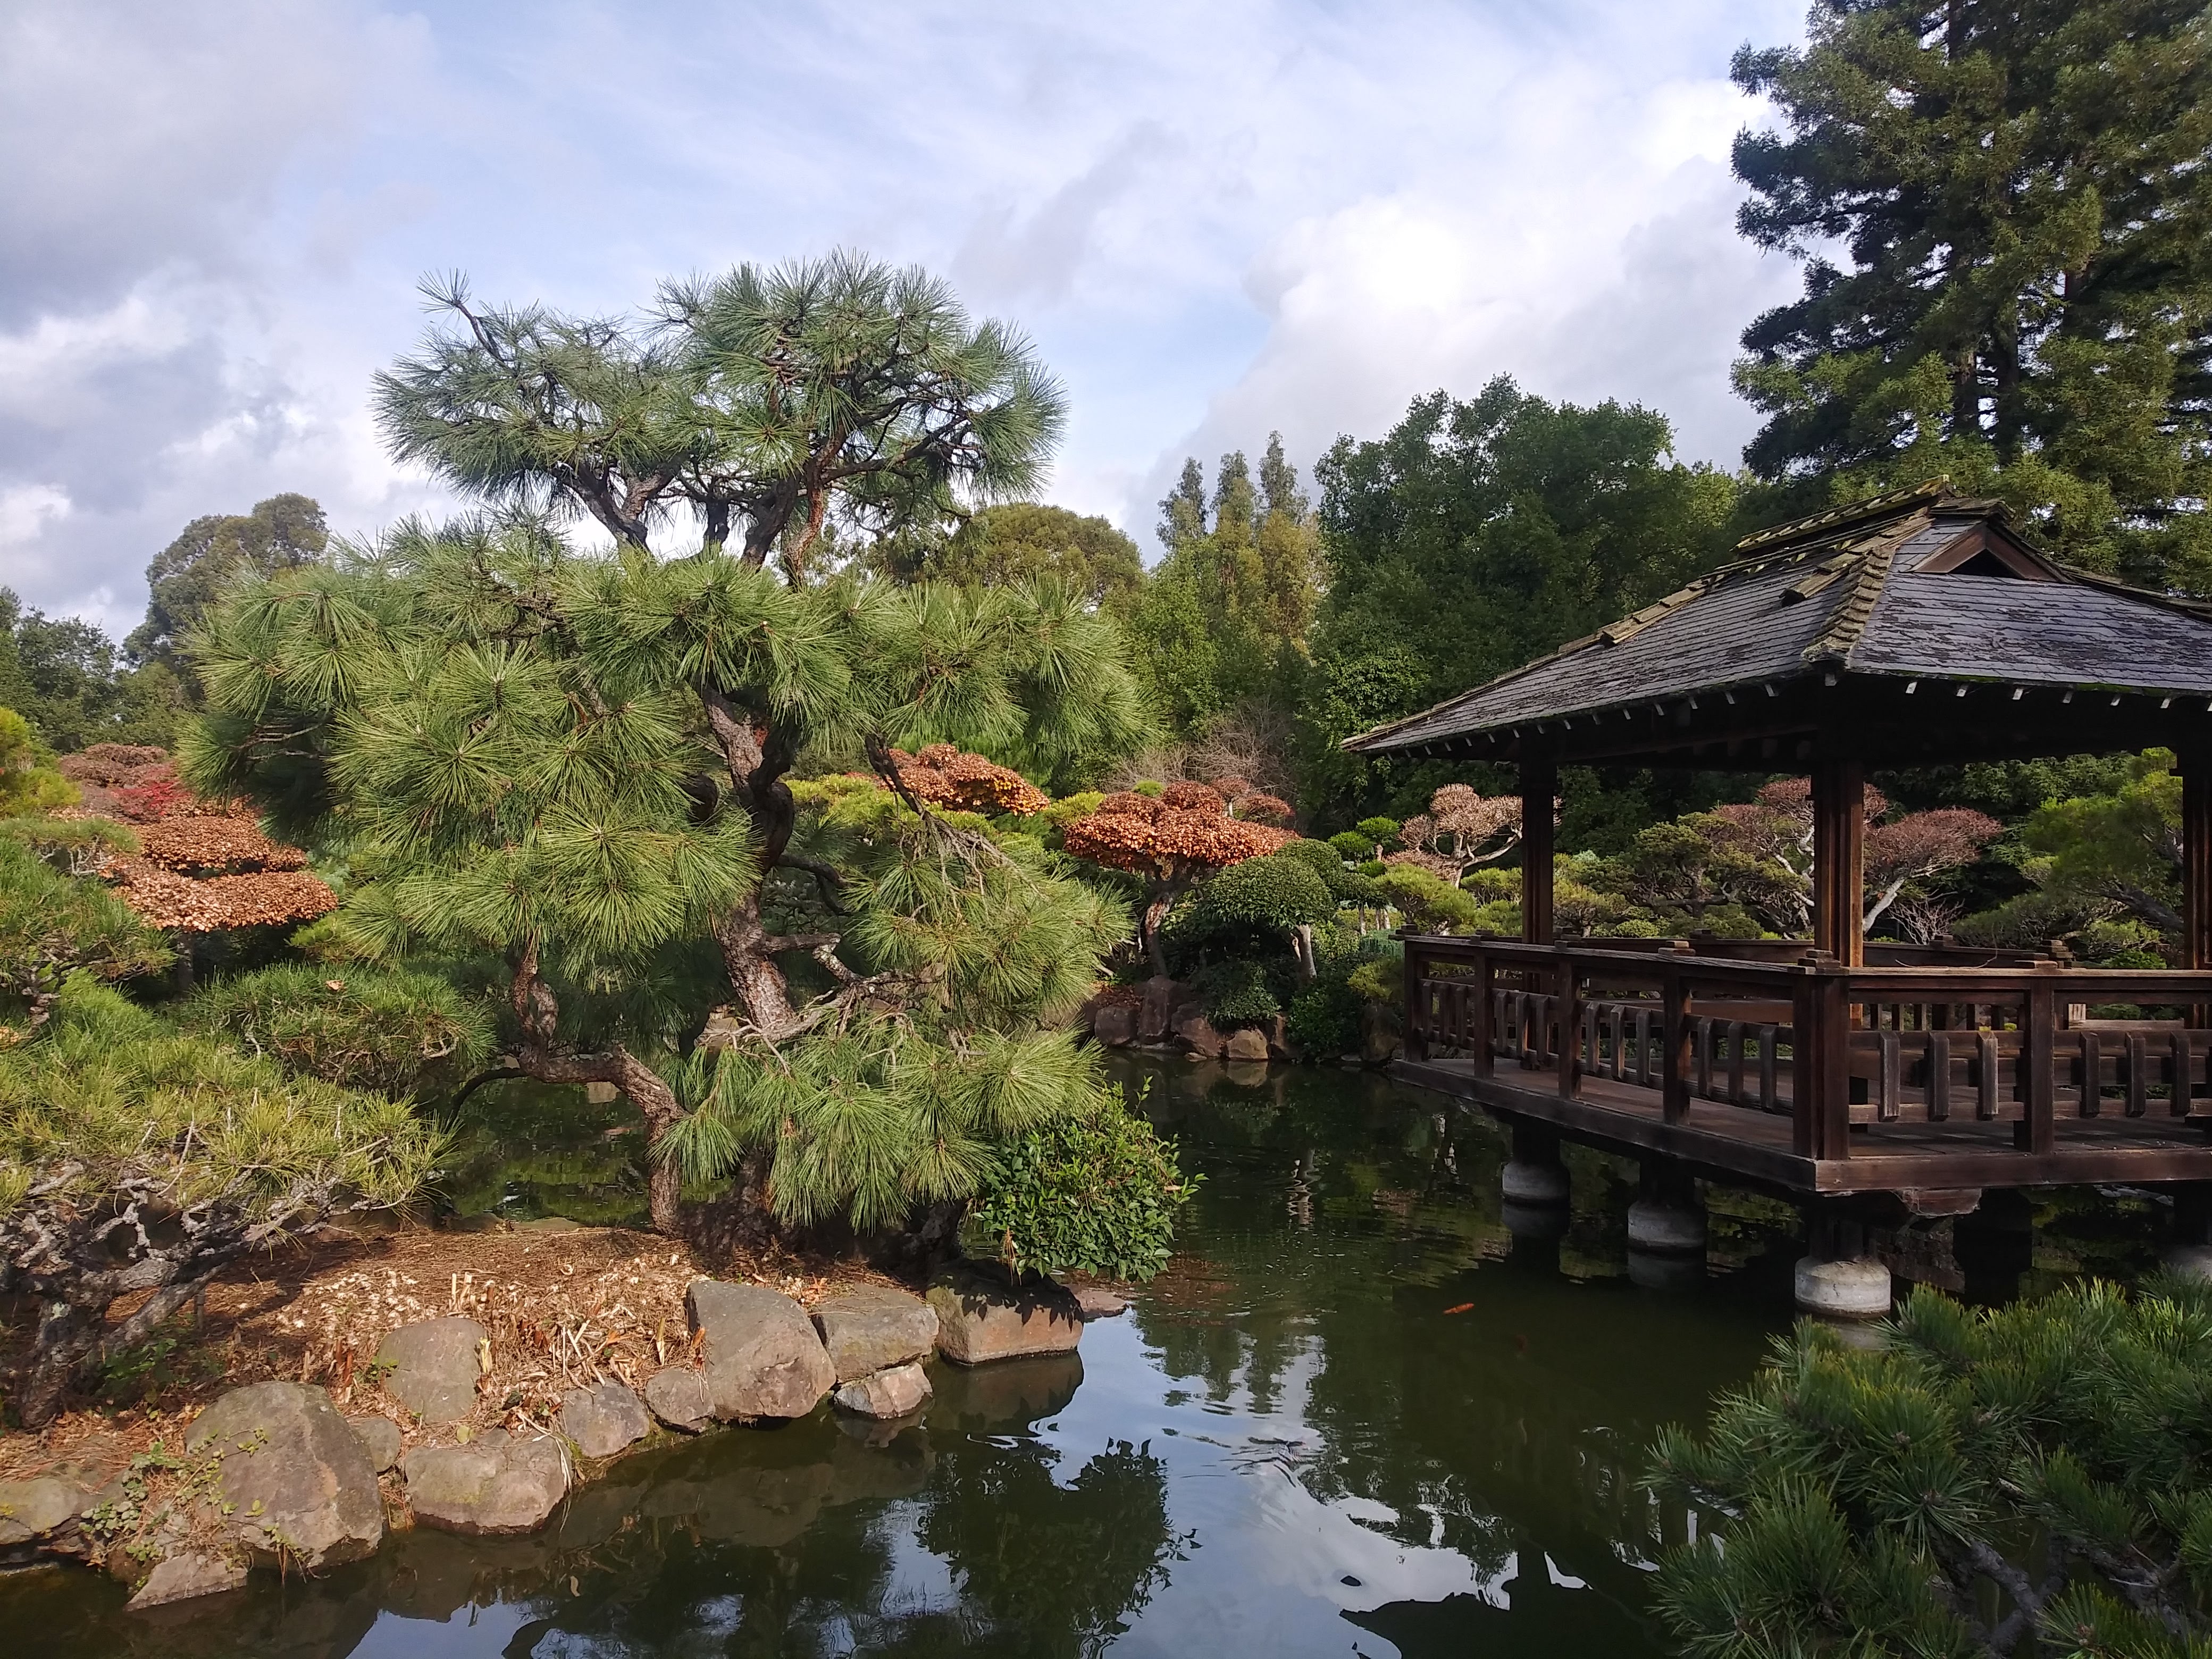 A Japanese Tea Garden